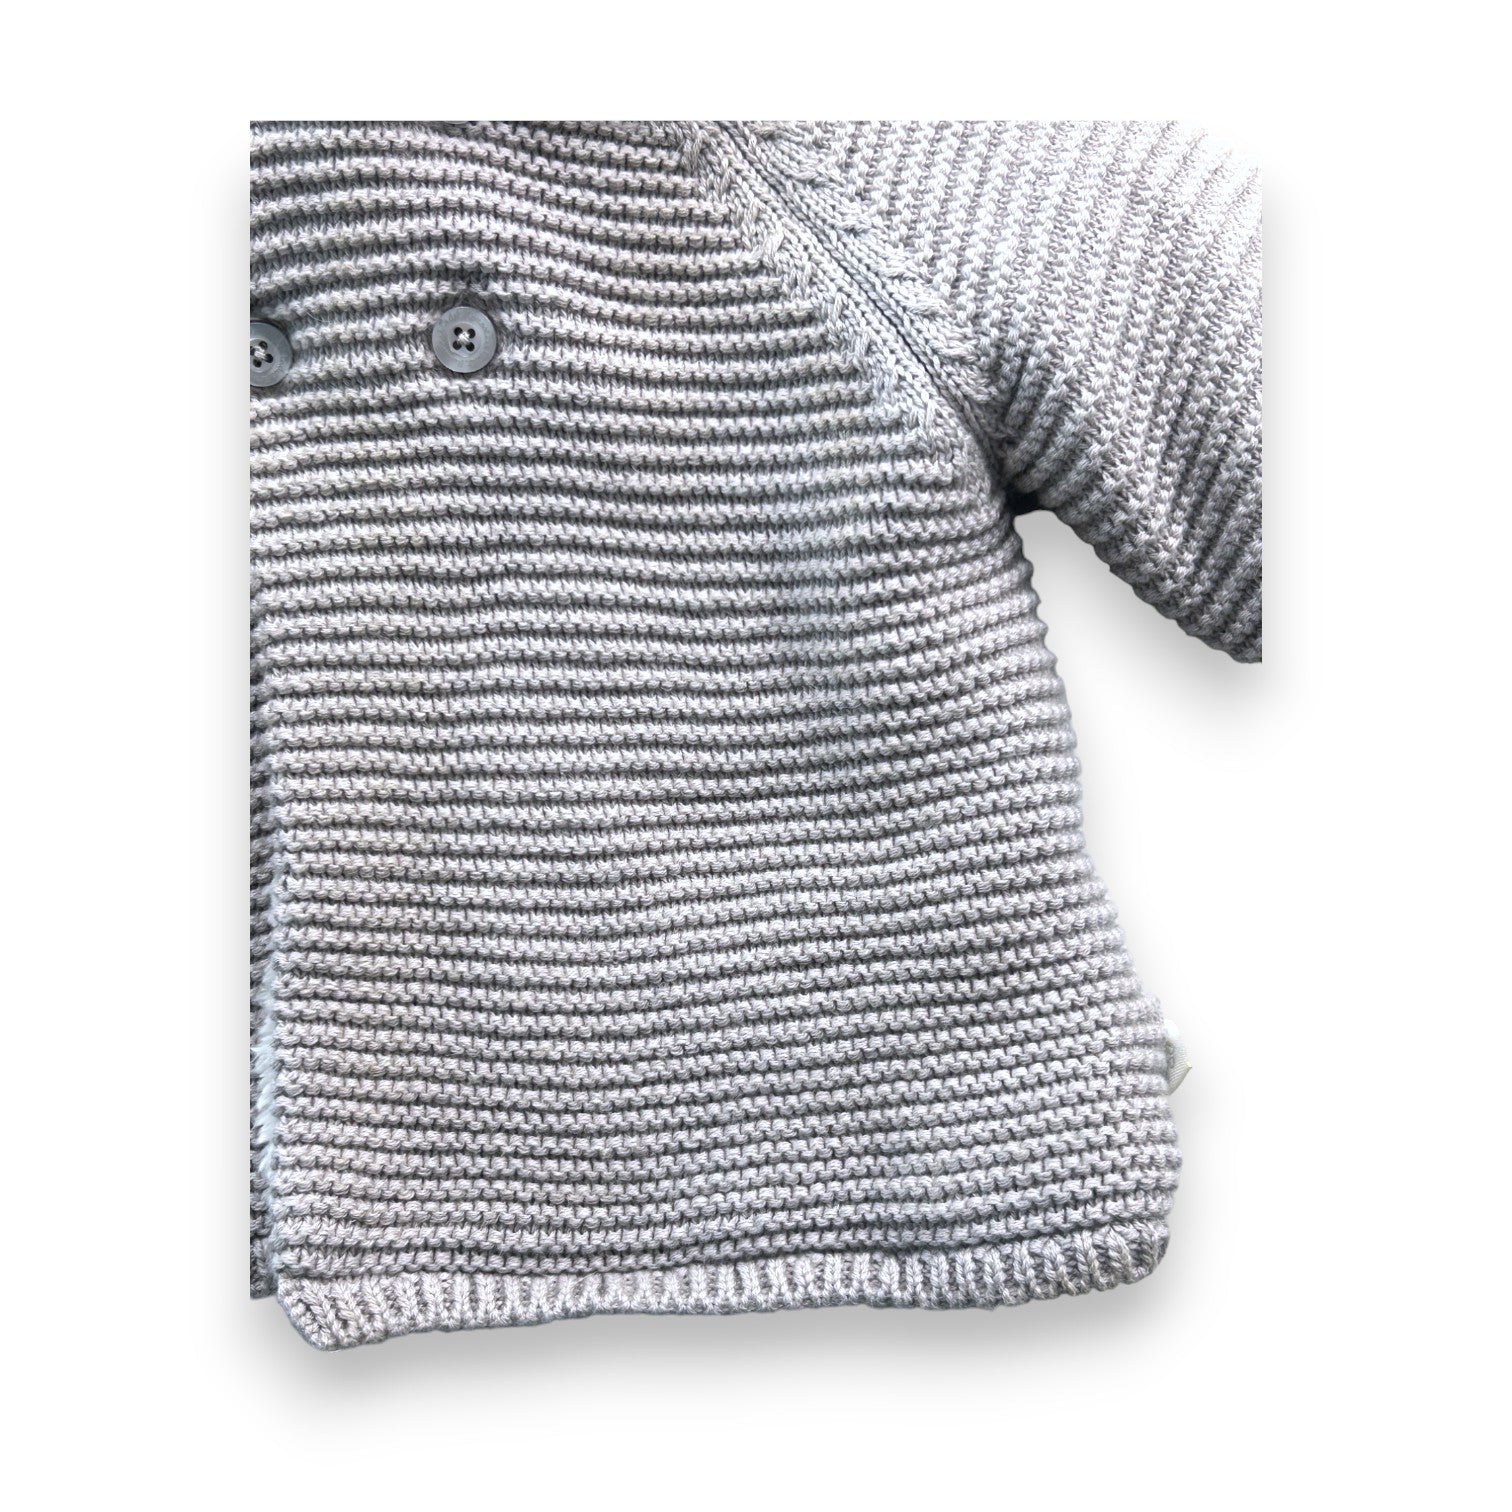 CADET ROUSSELLE - Veste droite Matrio tricot en laine - 12 mois